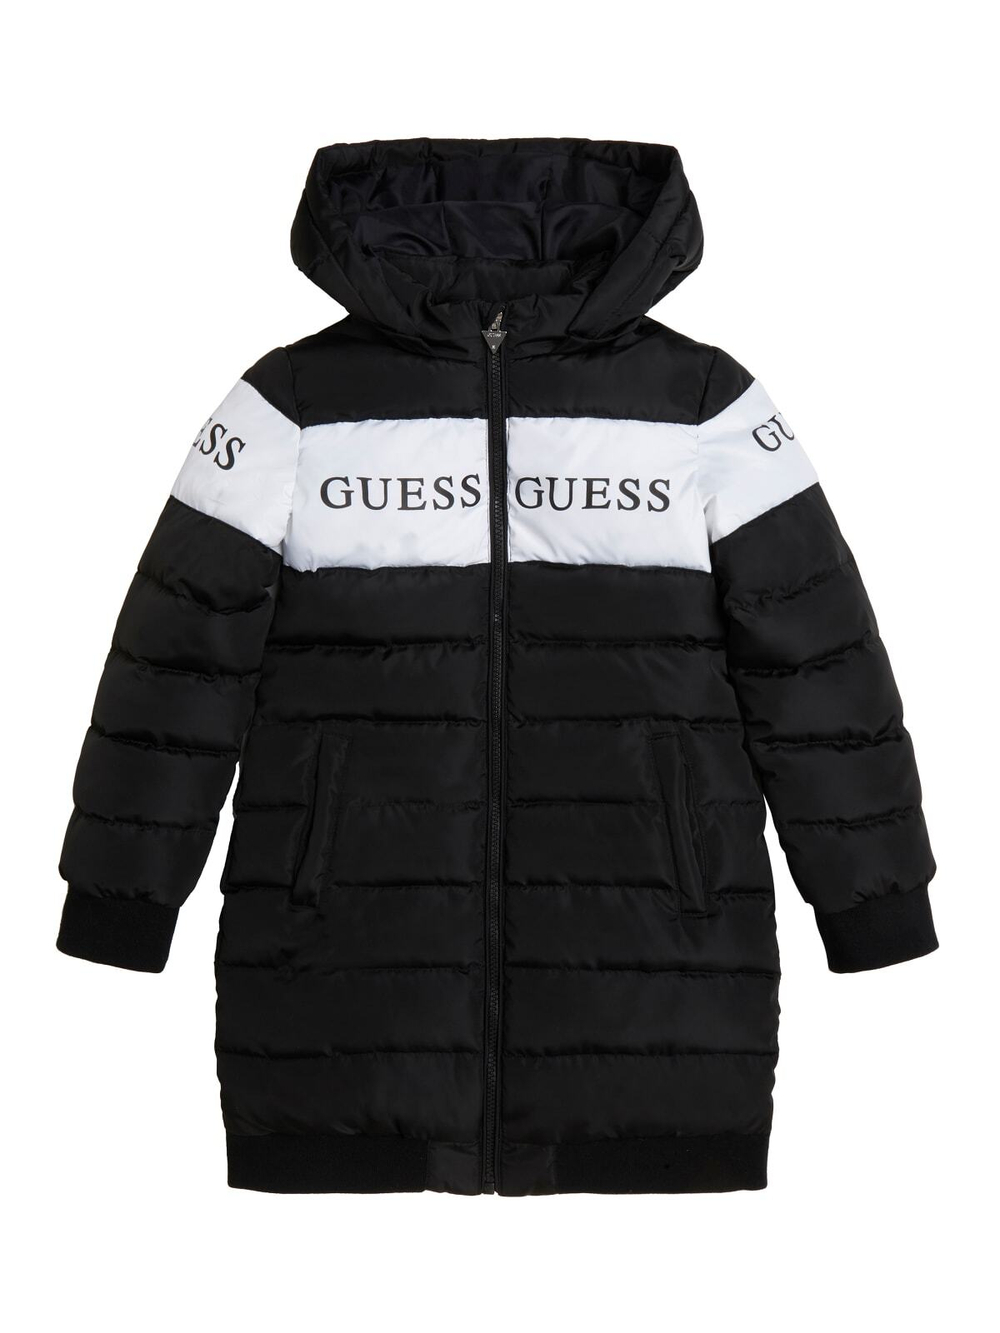 Пальто демисезонное с капюшоном GUESS Черный/Белая вставка с надписями: GUESS Девочка